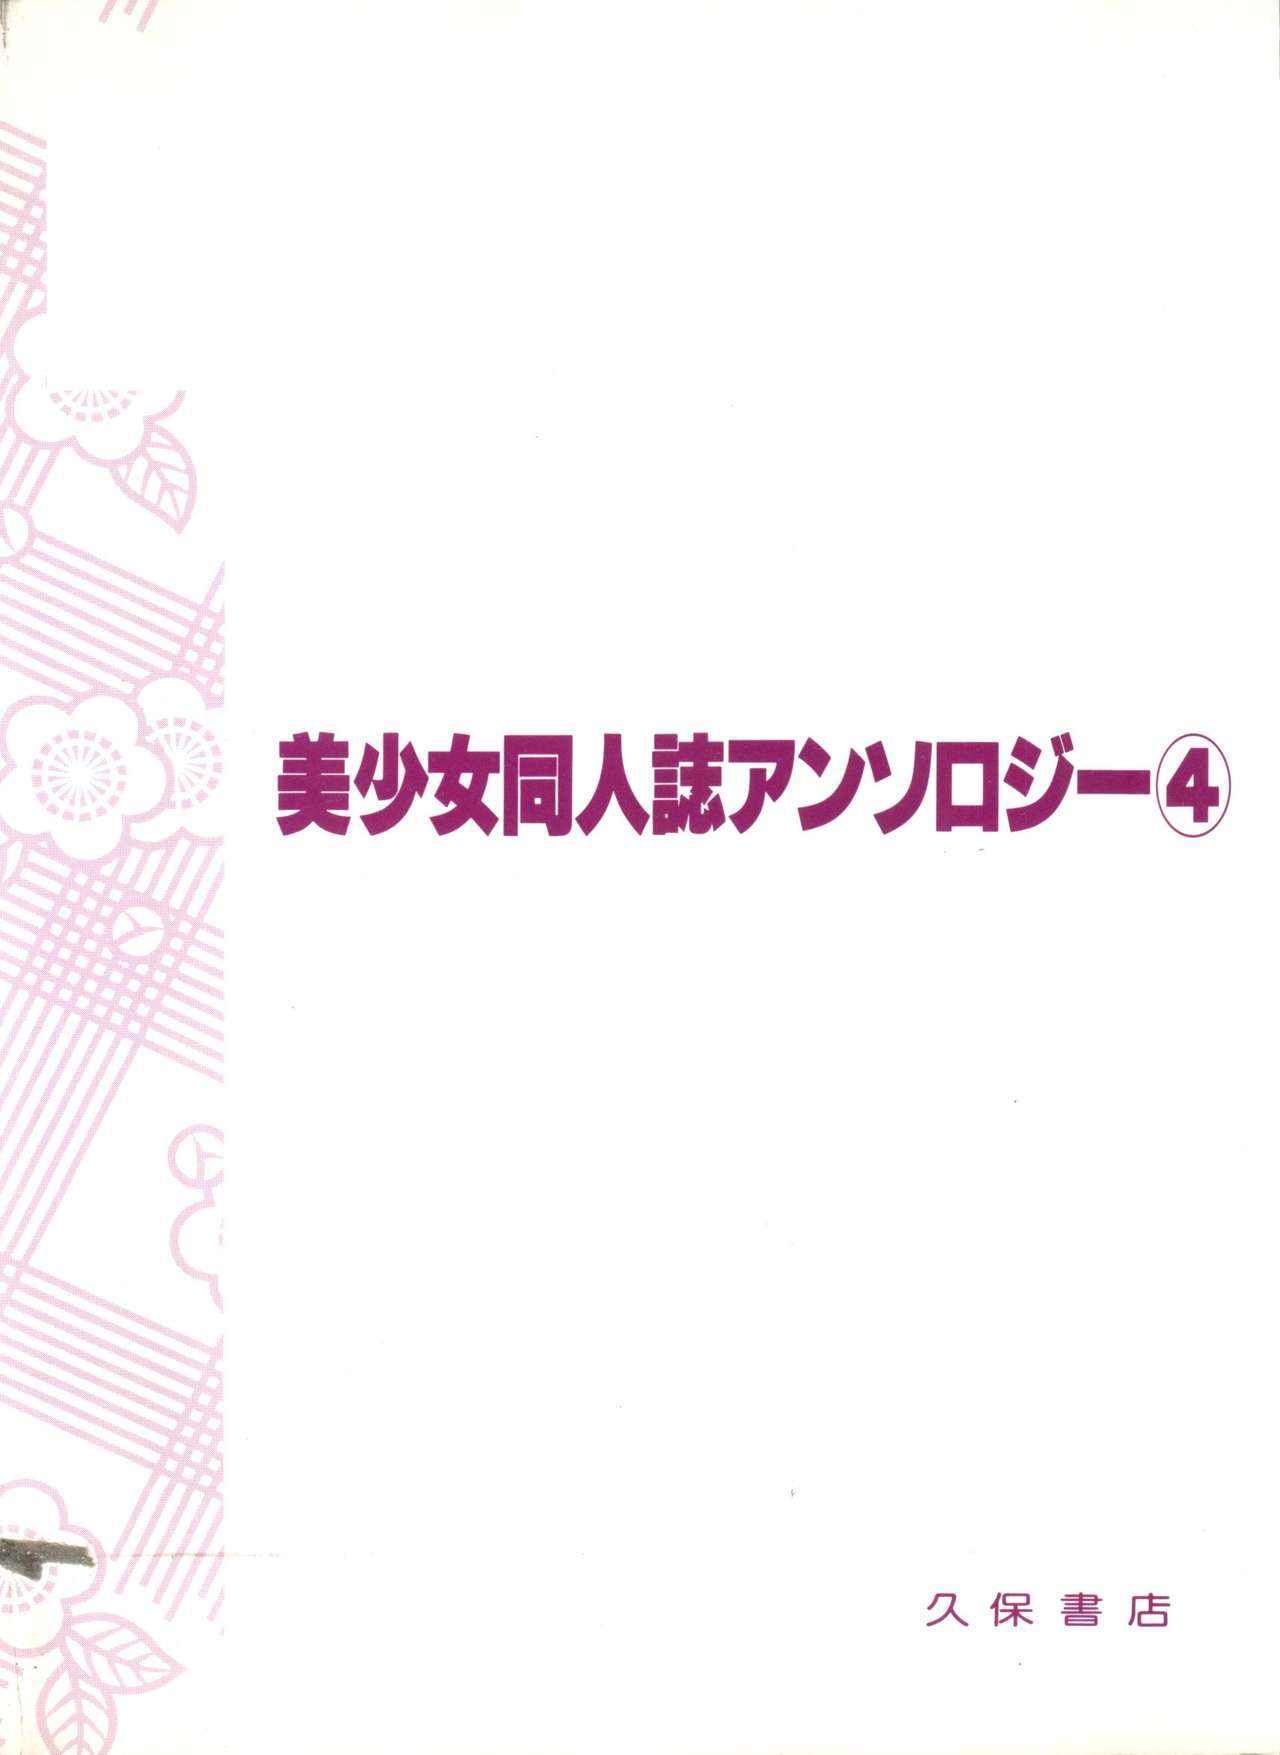 [Anthology] Bishoujo Doujinshi Anthology 4 (Various) page 149 full